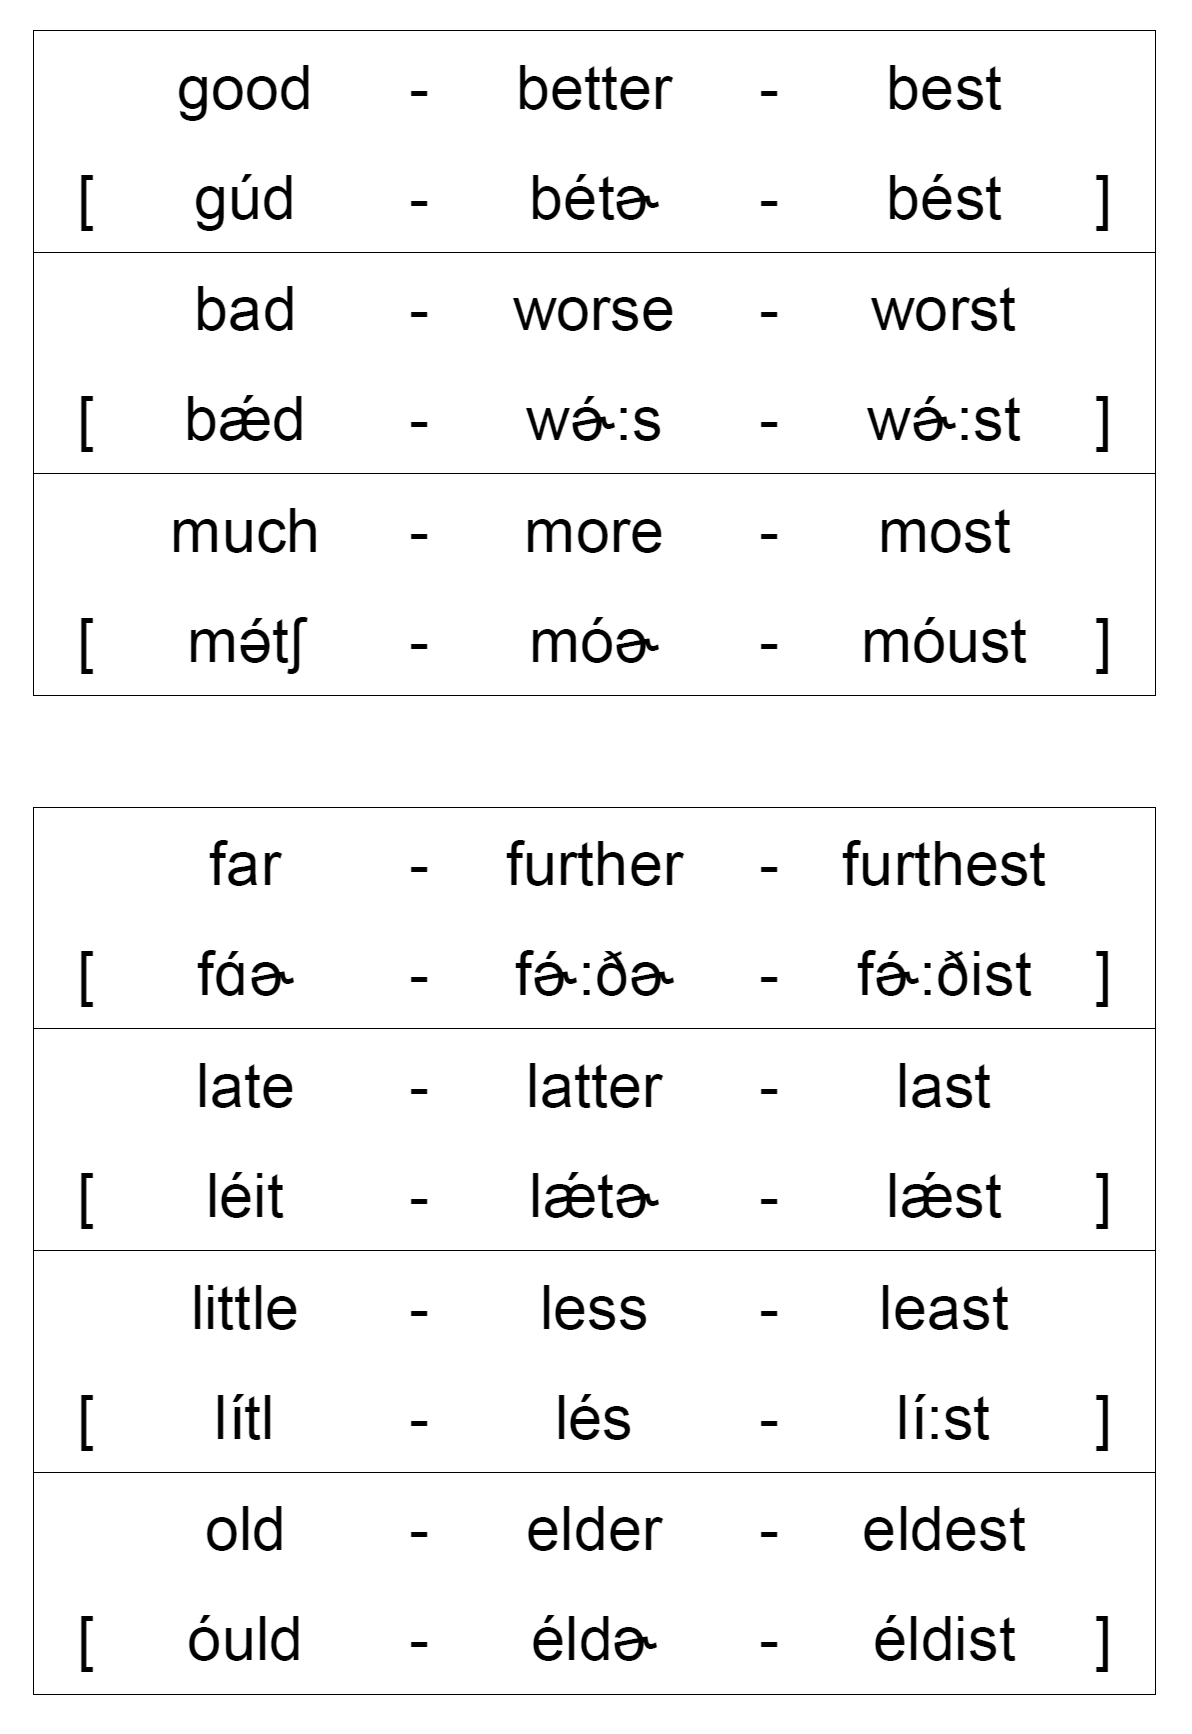 英語の不規則形容詞 副詞を暗記するための表を作ってみた 中村明裕 Note